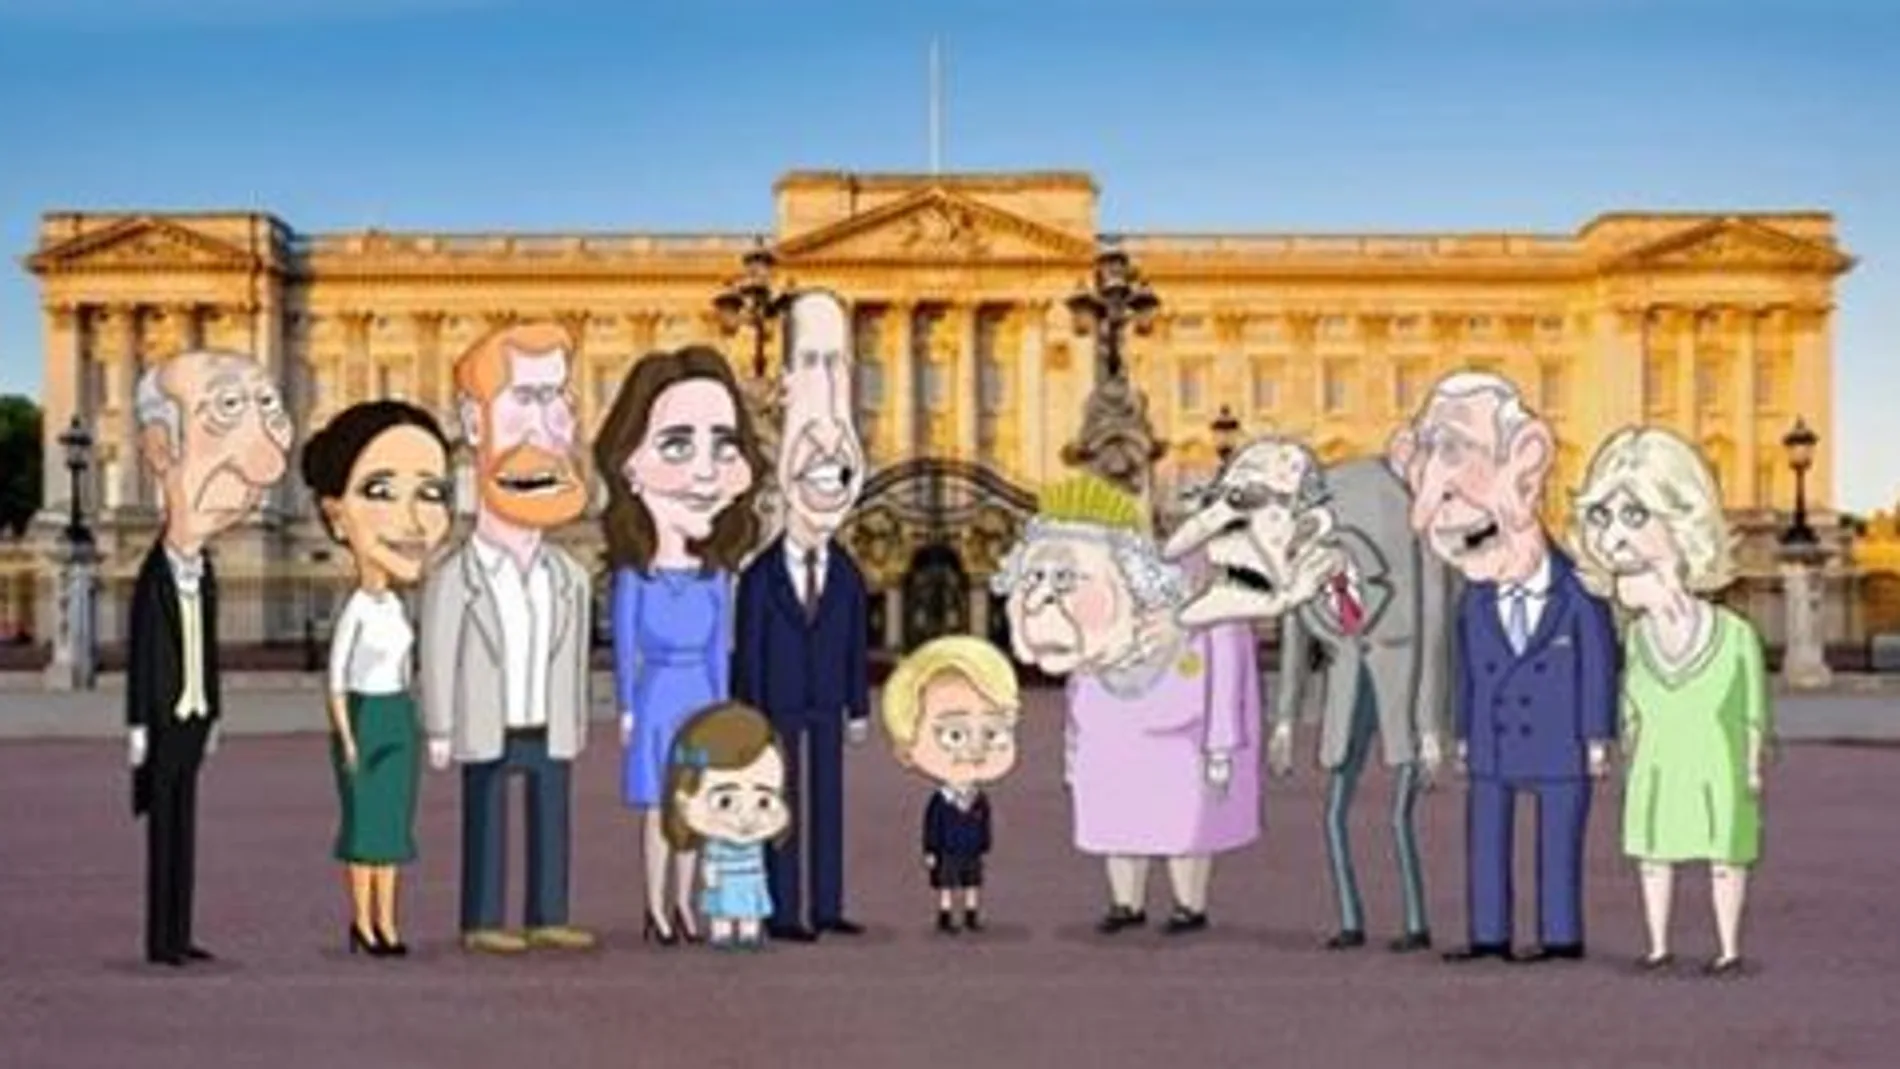 Cartel de la serie de animación "The Prince"